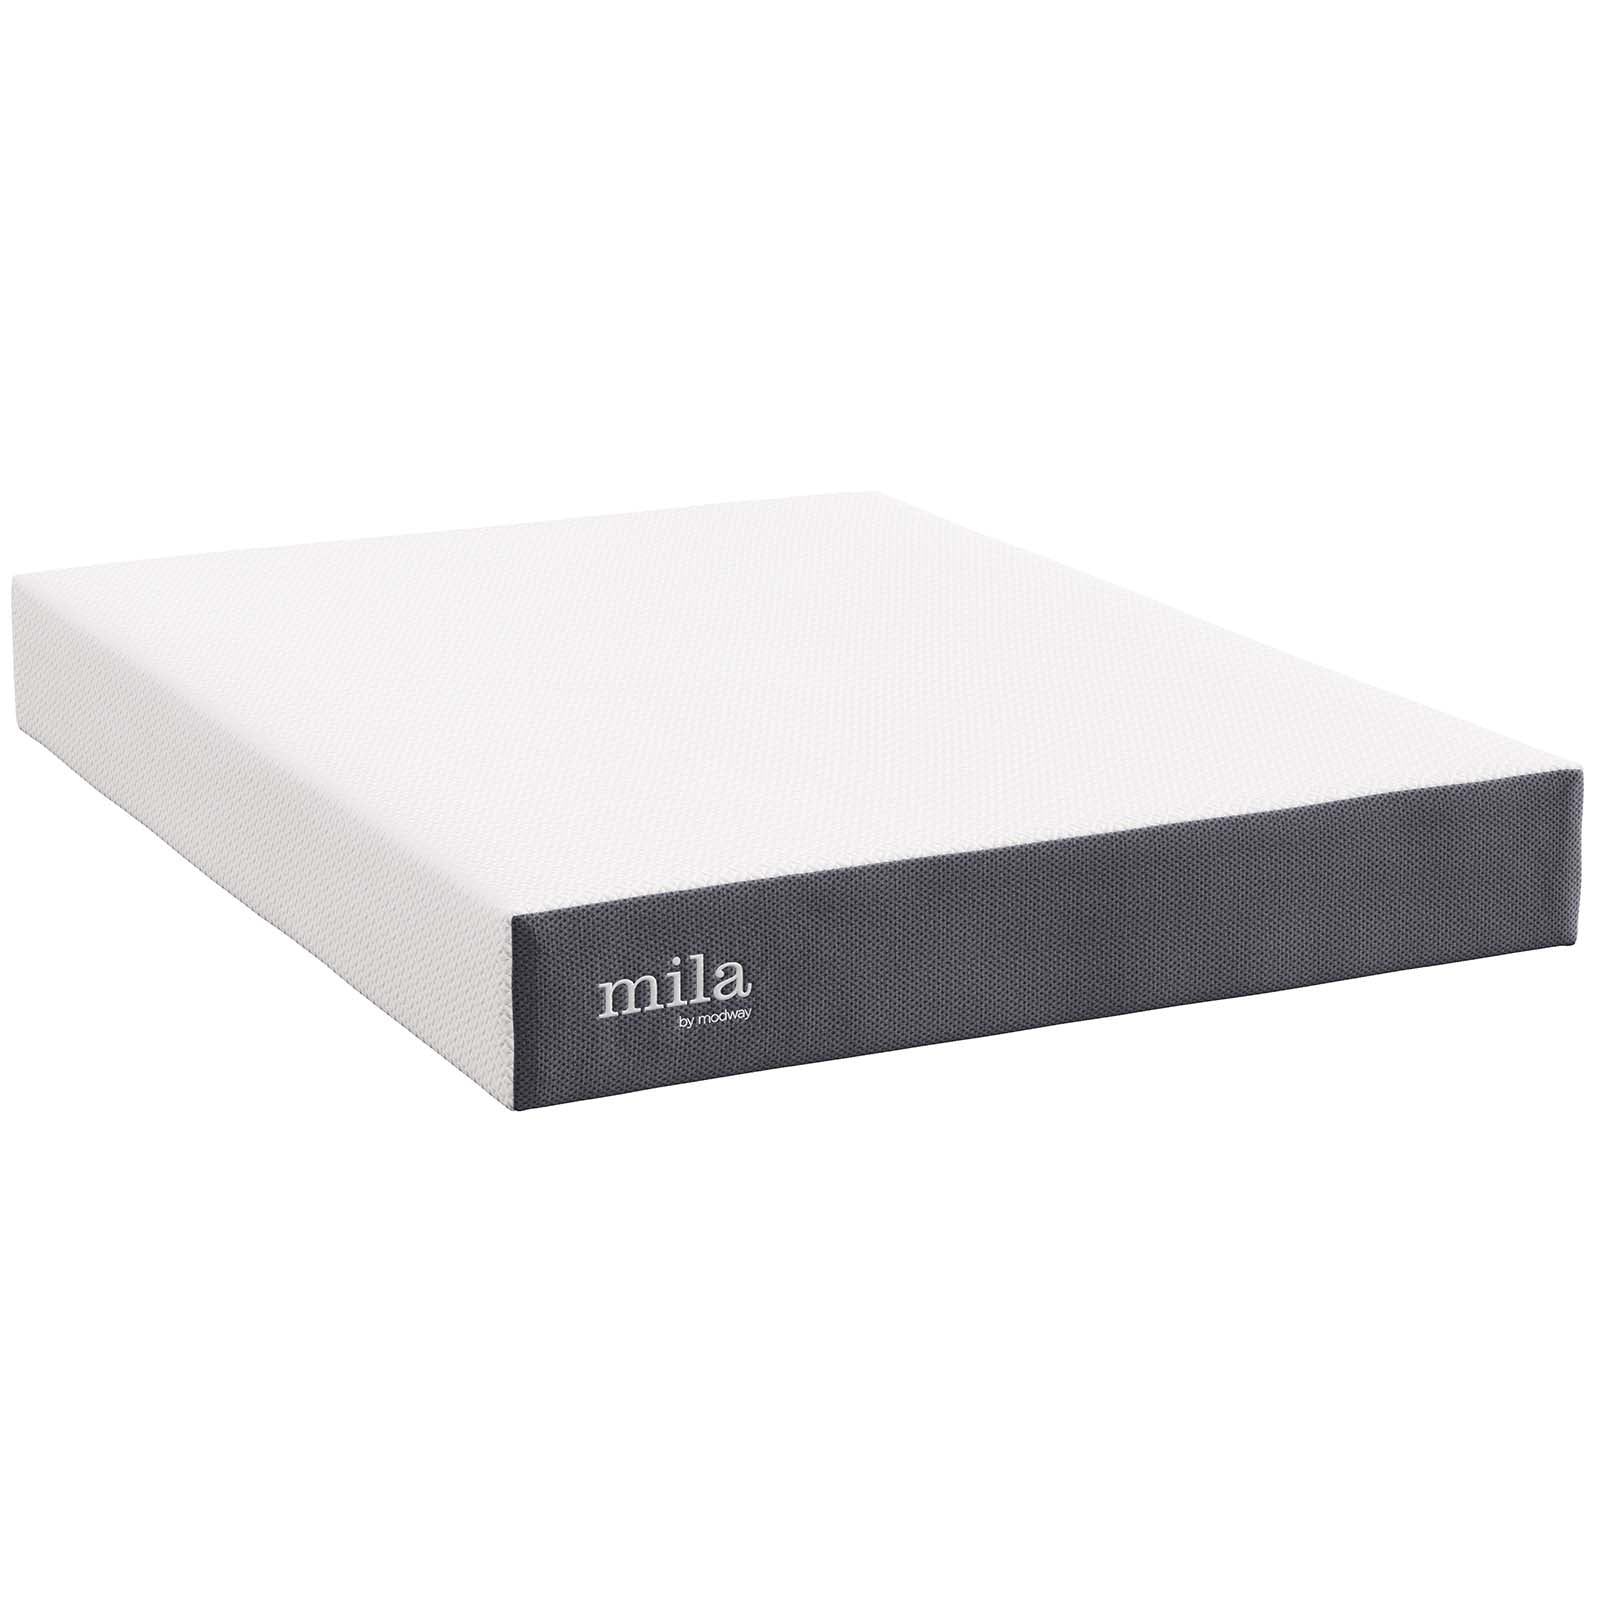 Mila Memory Foam Mattress-Mattress-Modway-Wall2Wall Furnishings